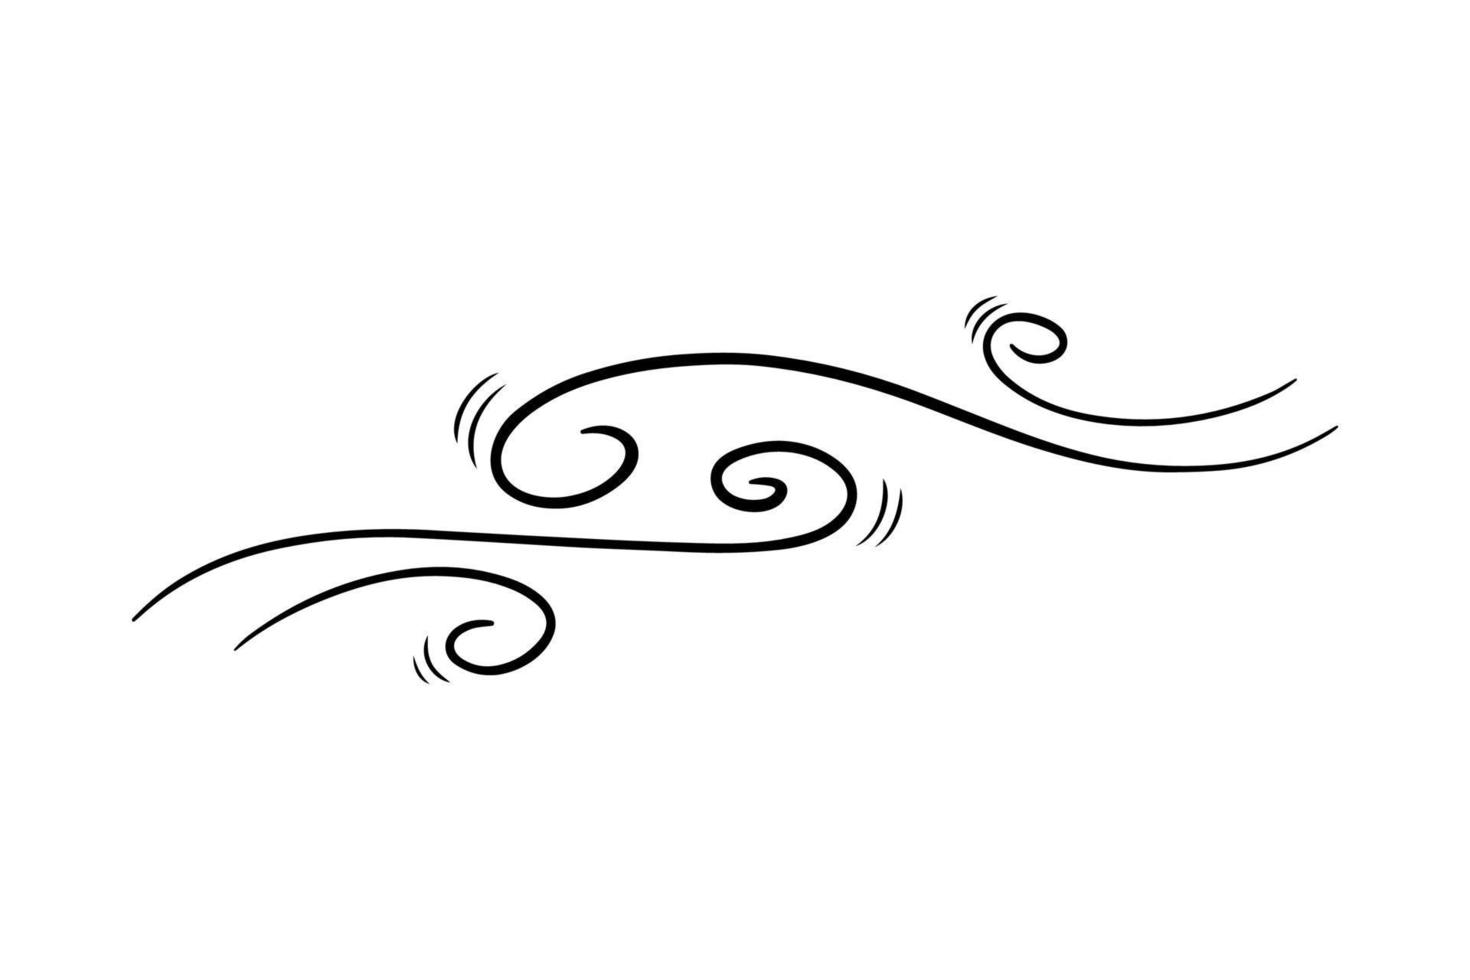 soplo de viento en estilo garabato, ilustración vectorial. ola de aire frío durante el clima ventoso. esquema de símbolo de ráfaga para impresión y diseño. elemento de línea negra aislado sobre un fondo blanco vector